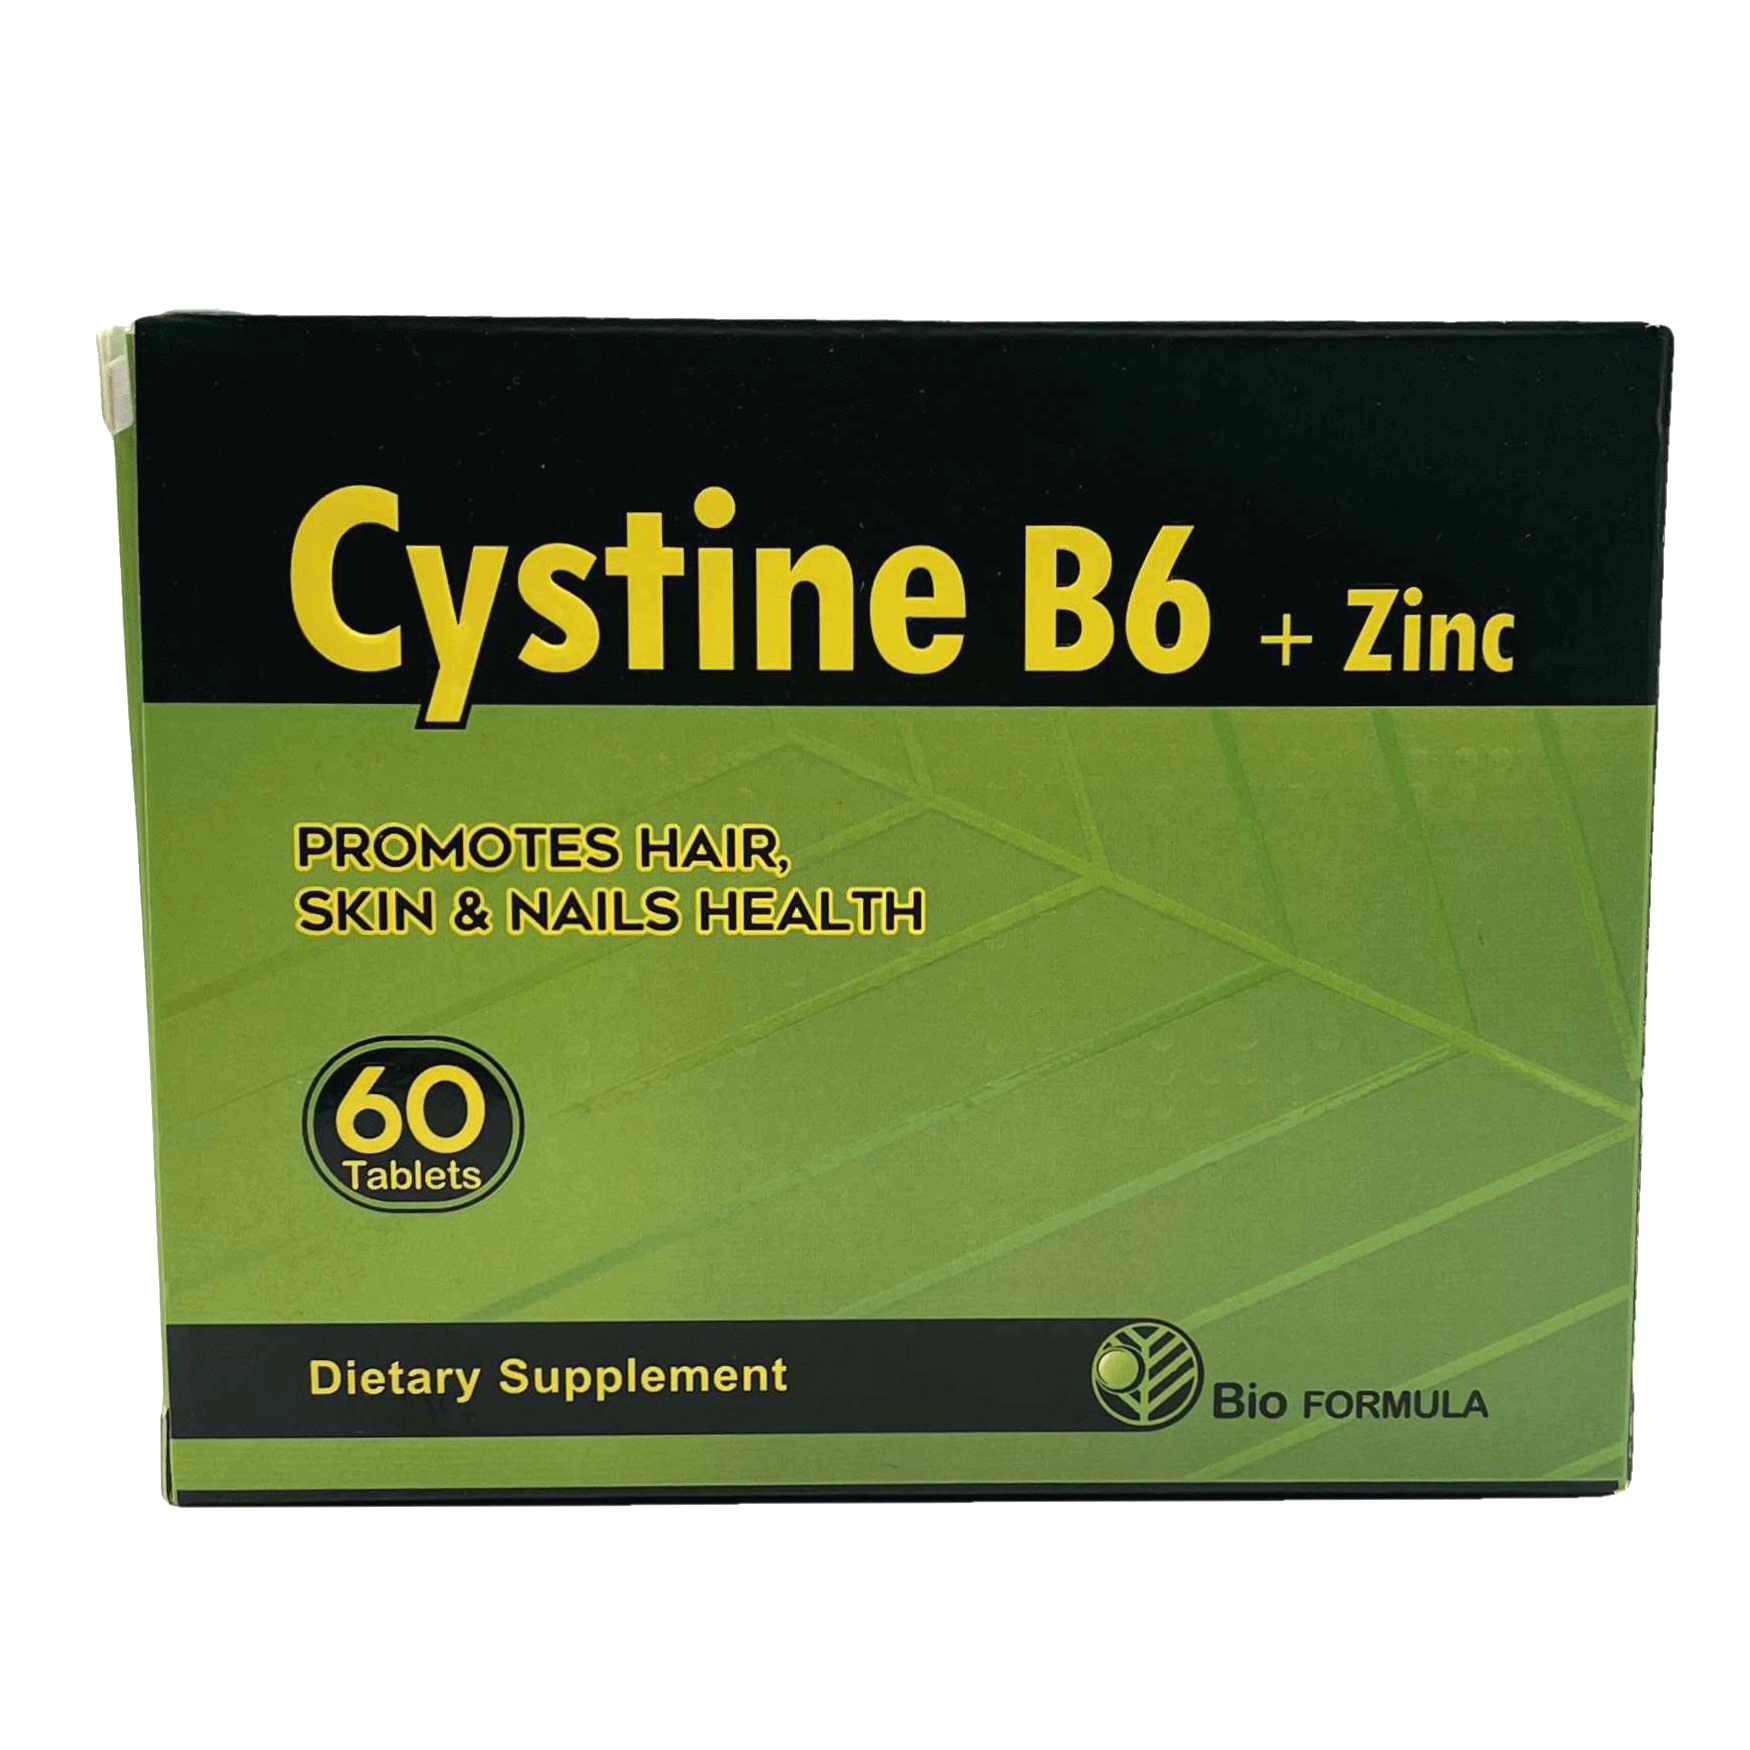 قرص سیستین ب6 و زینک بایو فرمولا Bio formula Cystine B6